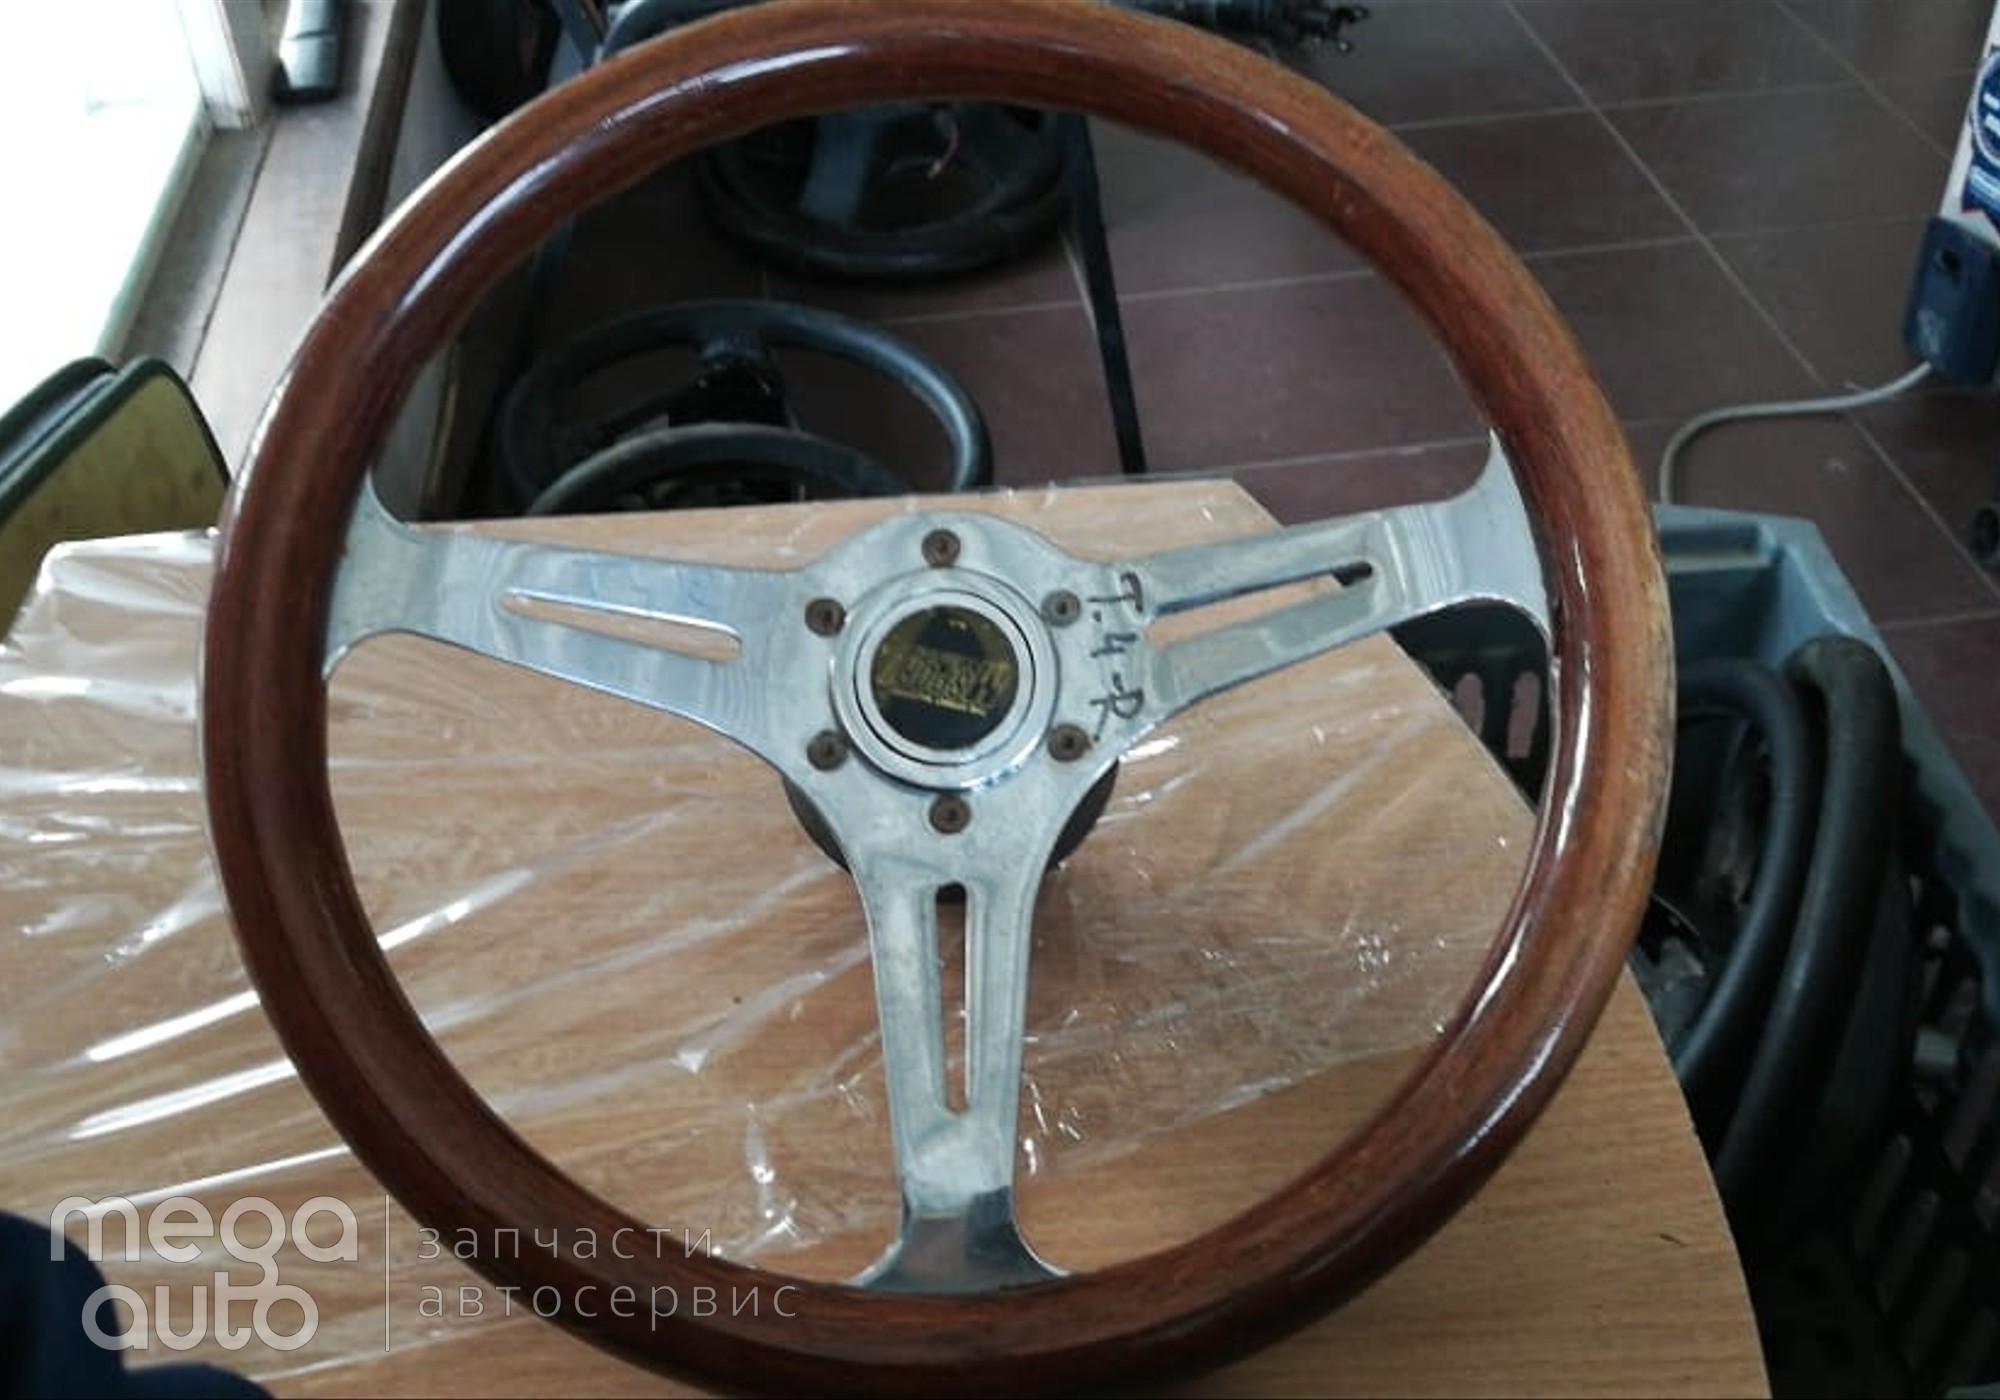 1712118 Рулевое колесо тоета кравн S 180 ДЕРЕВО для Toyota Crown S180 (с 1999 по 2008)